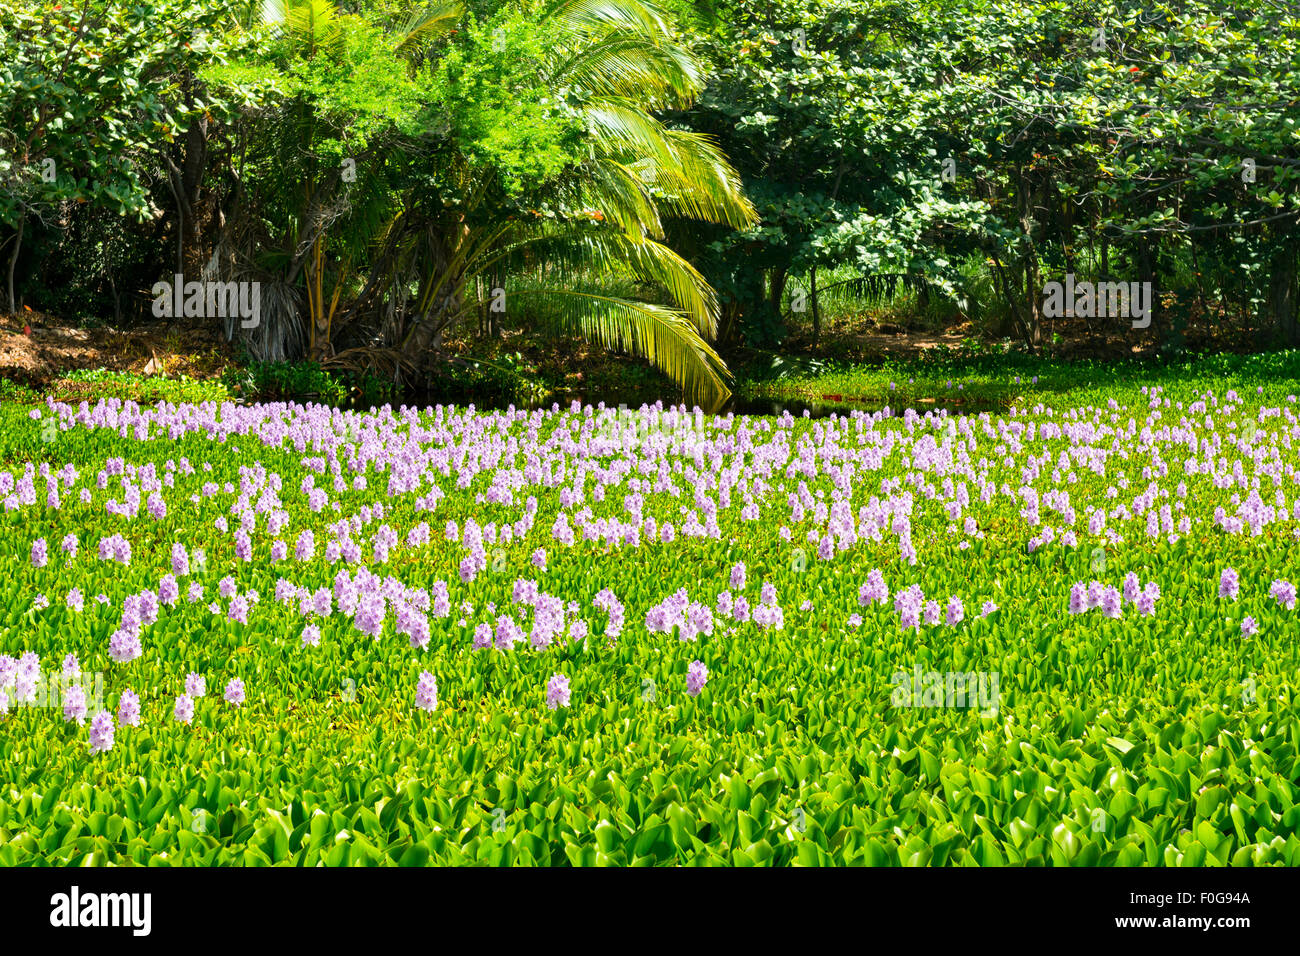 Ab auf die Seite der Punalu'u ist schwarzen Sandstrand einen schönen Teich mit grünen Pflanzen und schönen lila Blüten bedeckt. Stockfoto